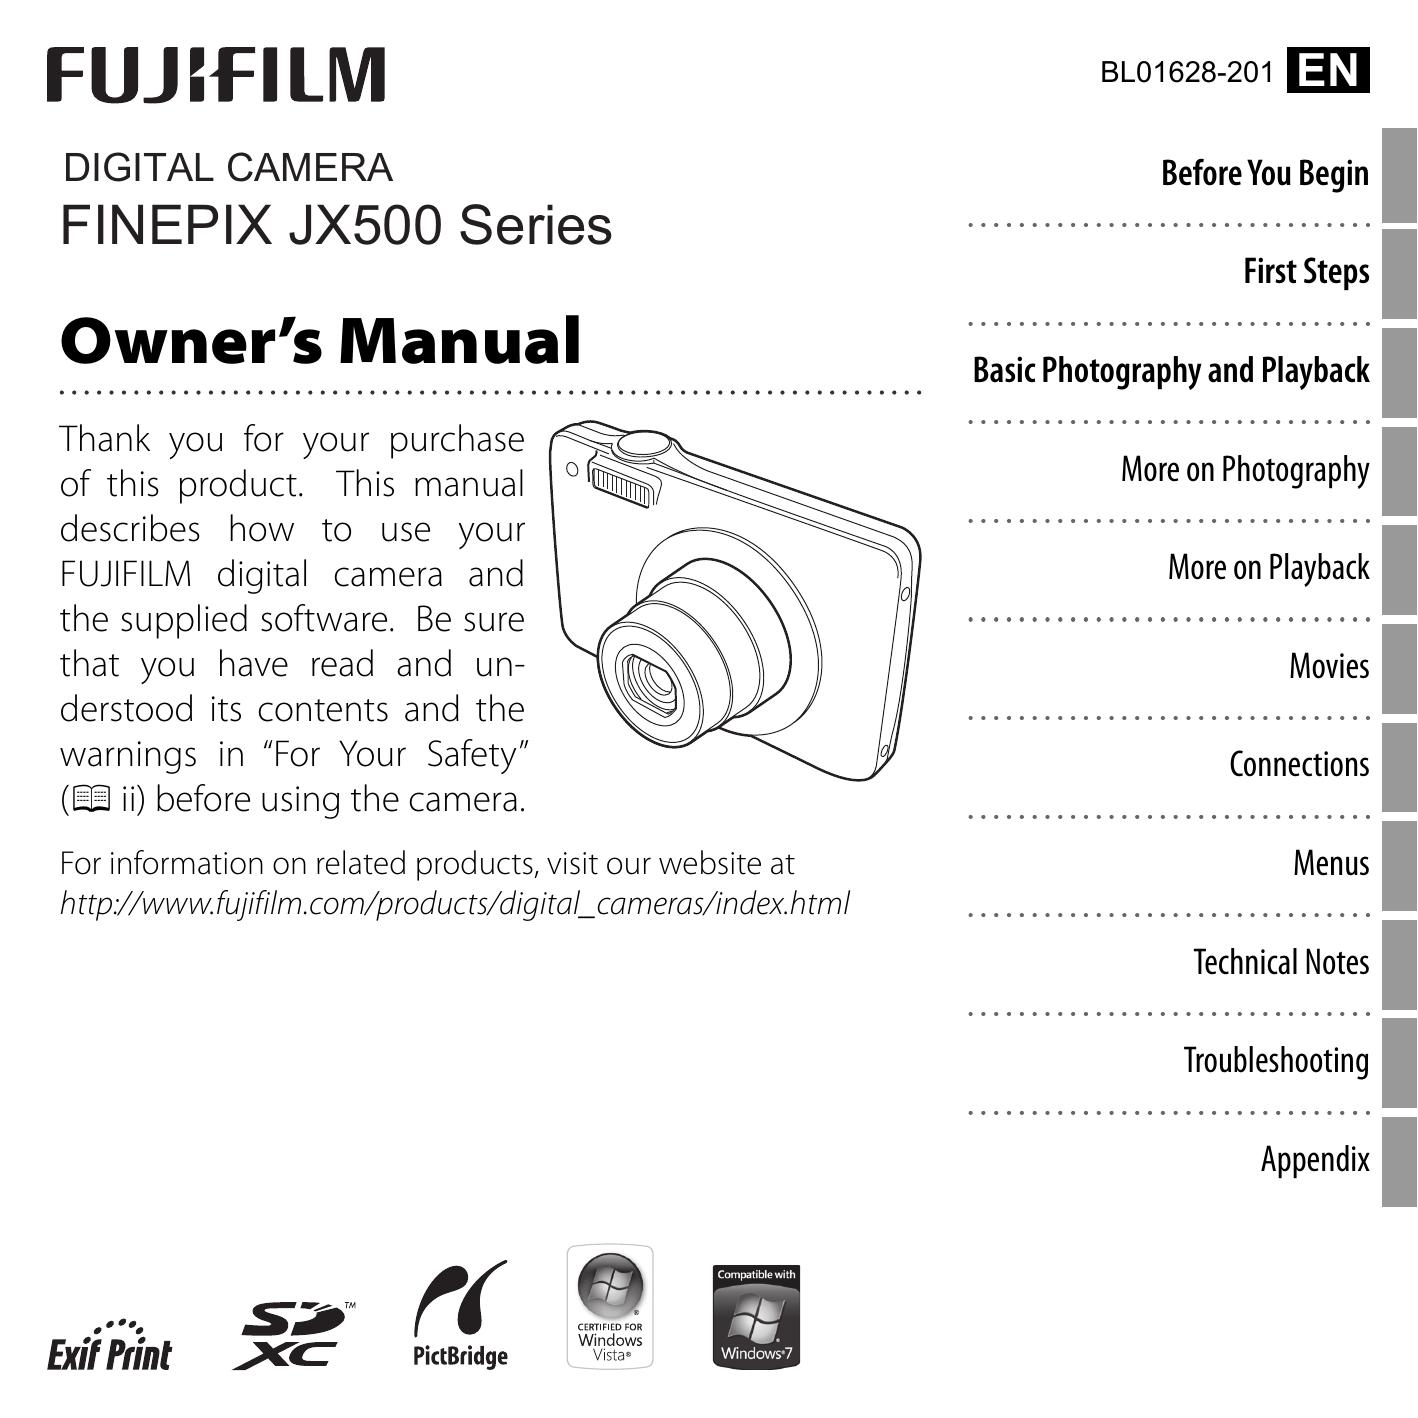 FujiFilm 16215853 Digital Camera User Manual